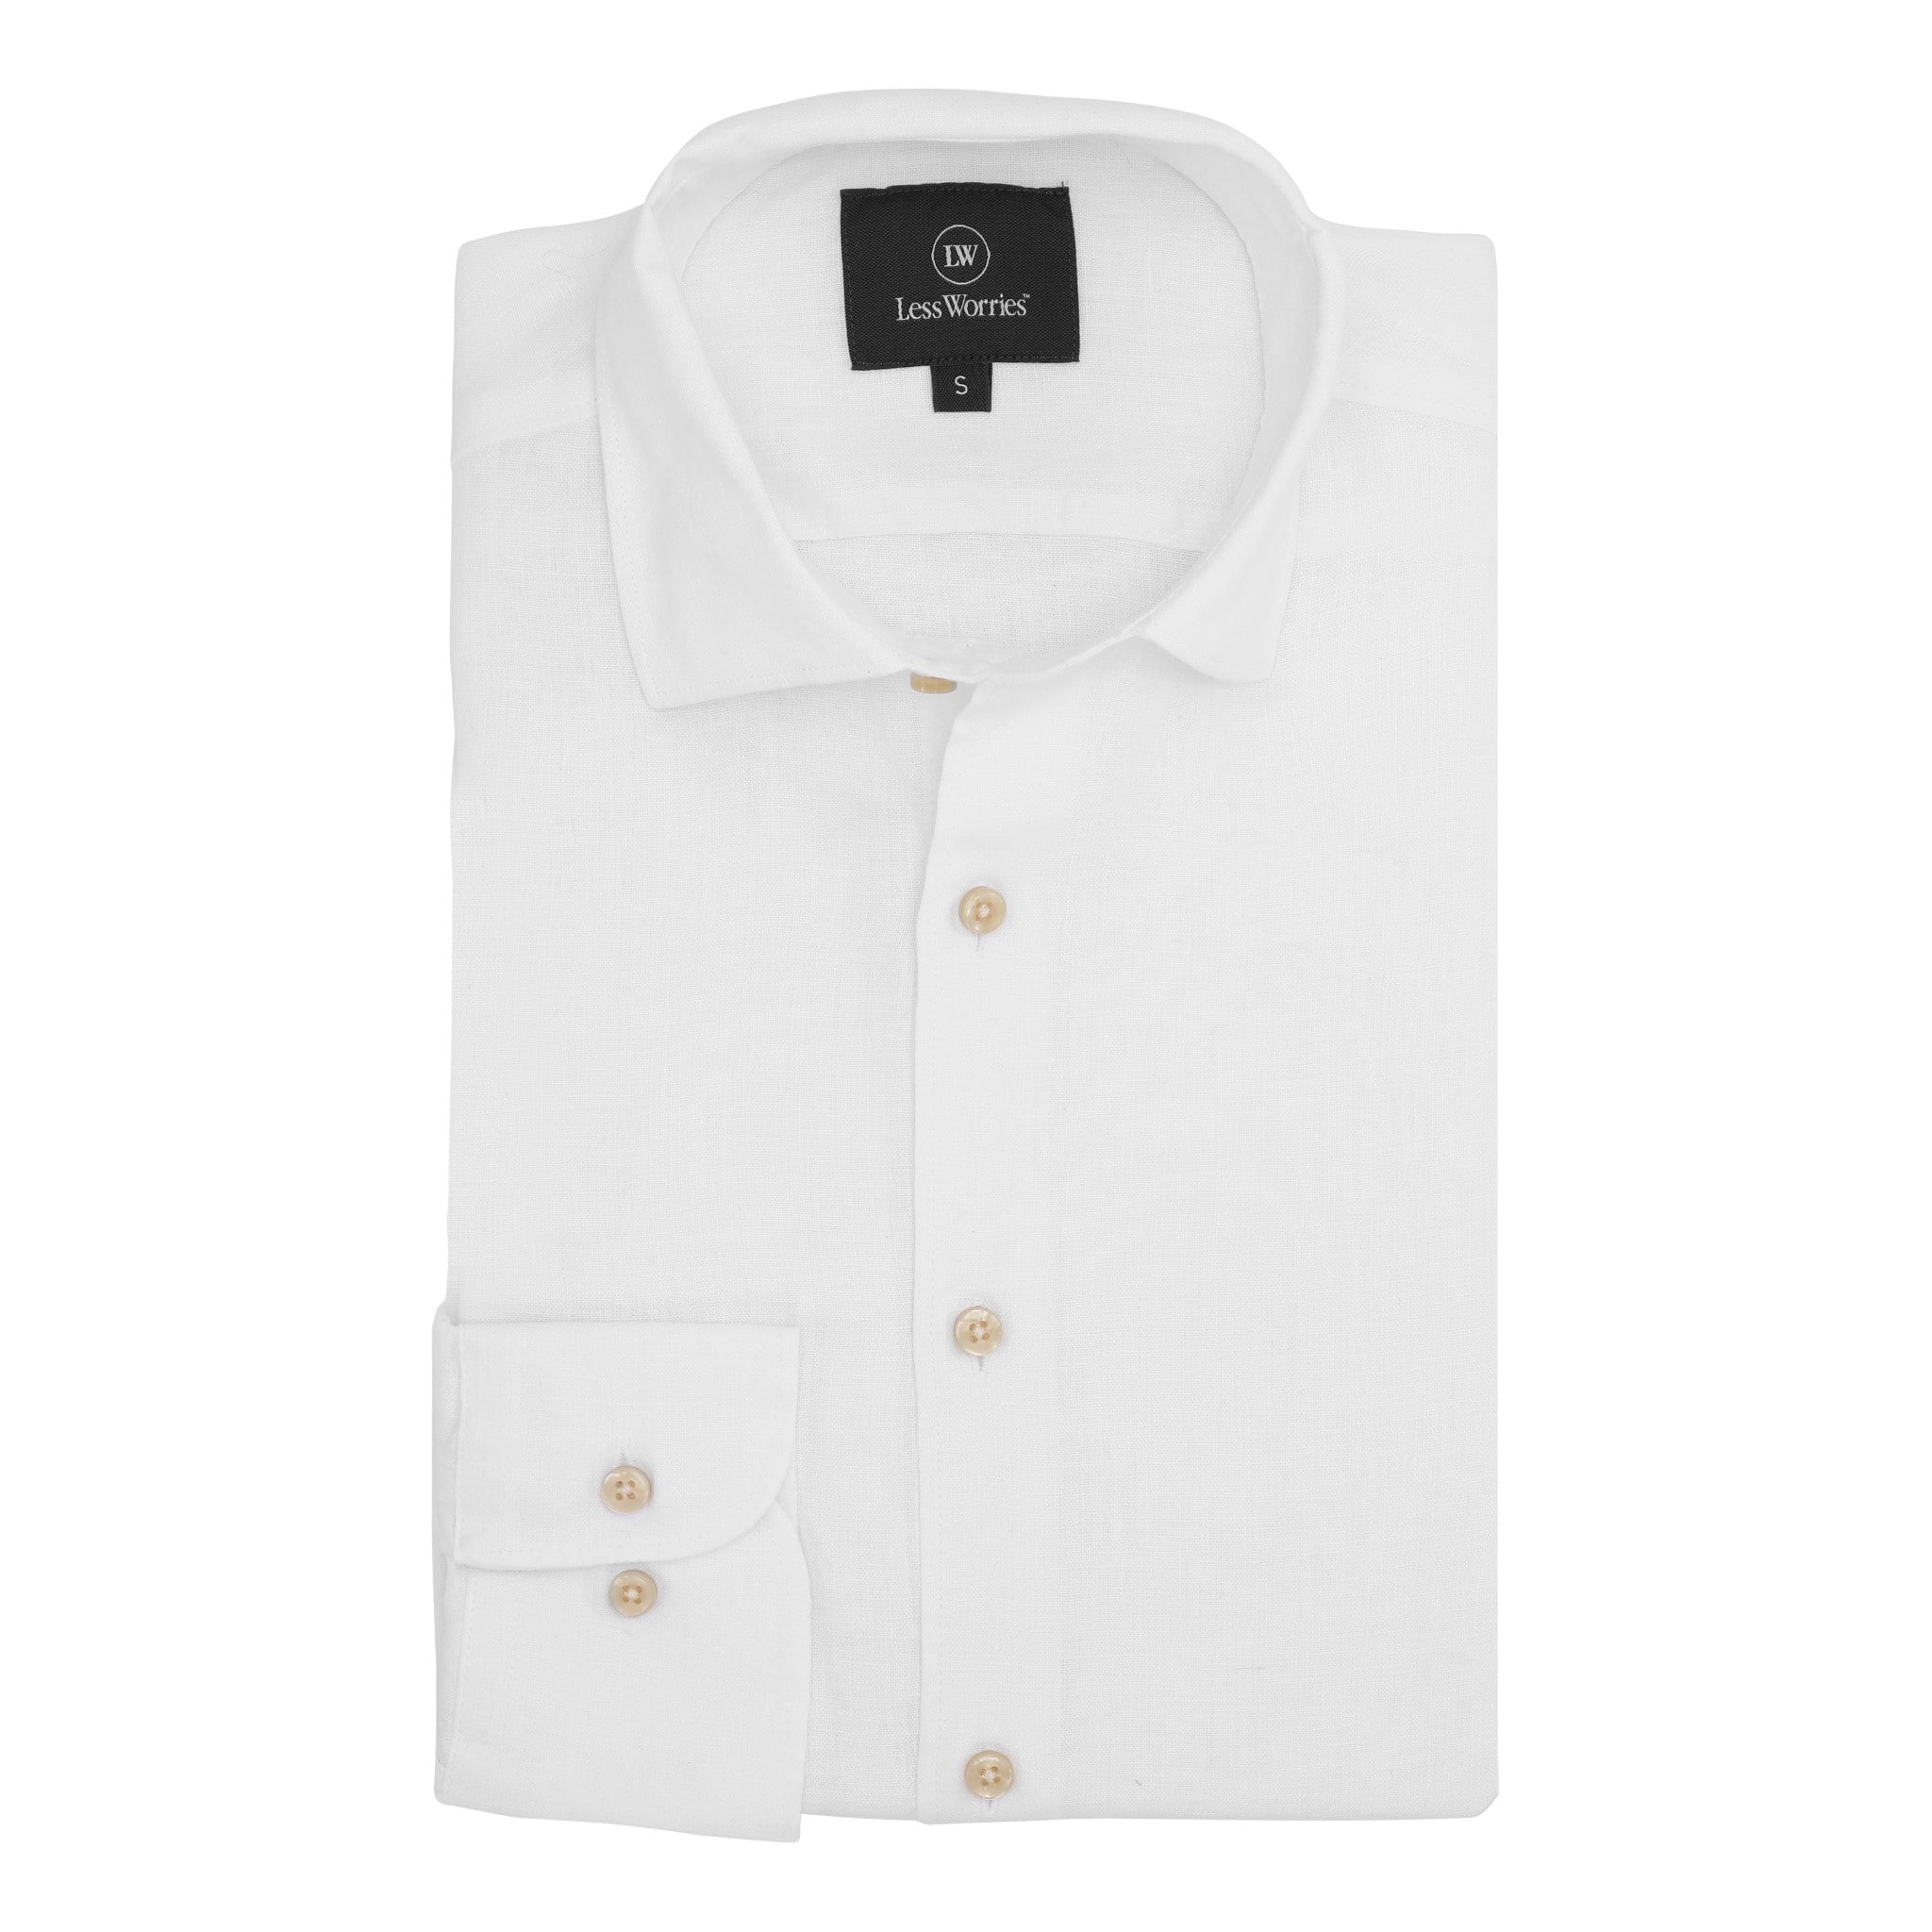 Timeless white linen shirt